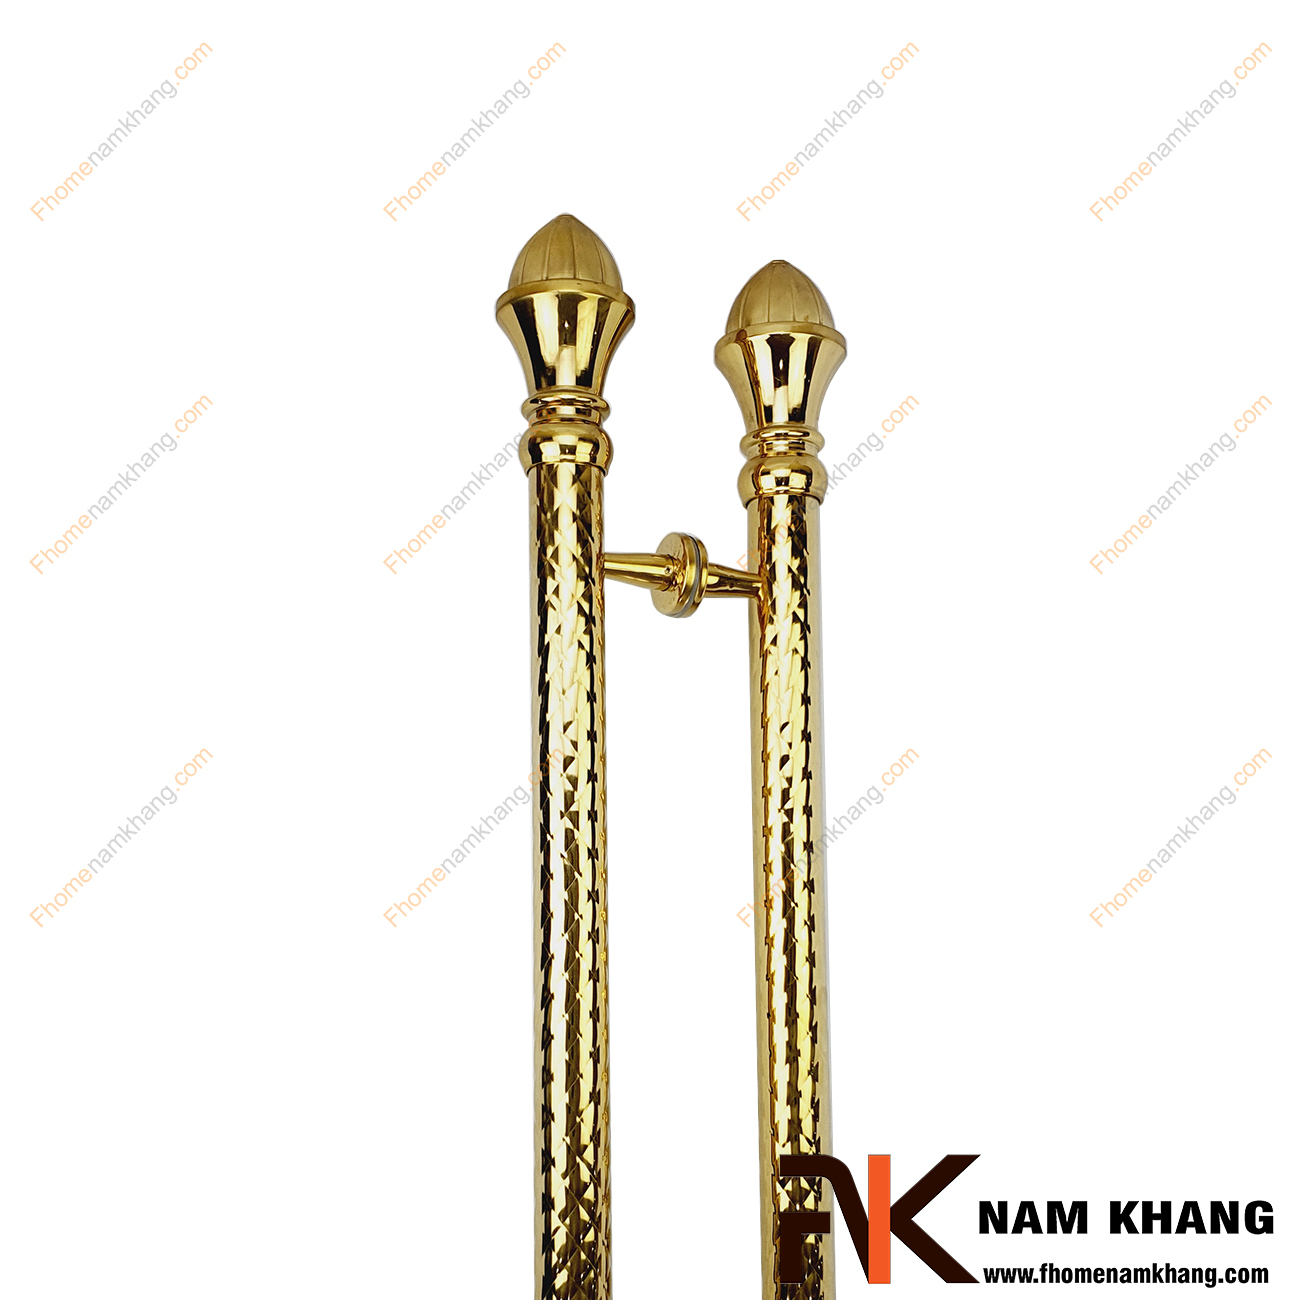 Tay nắm cửa chính cổ điển màu vàng gold NKC015-180XBV được sản xuất từ chất liệu cao cấp, có kích thước lớn chuyên dùng cho cửa gỗ, cửa chính, cửa cổng, cửa 2 hoặc 4 cánh,...